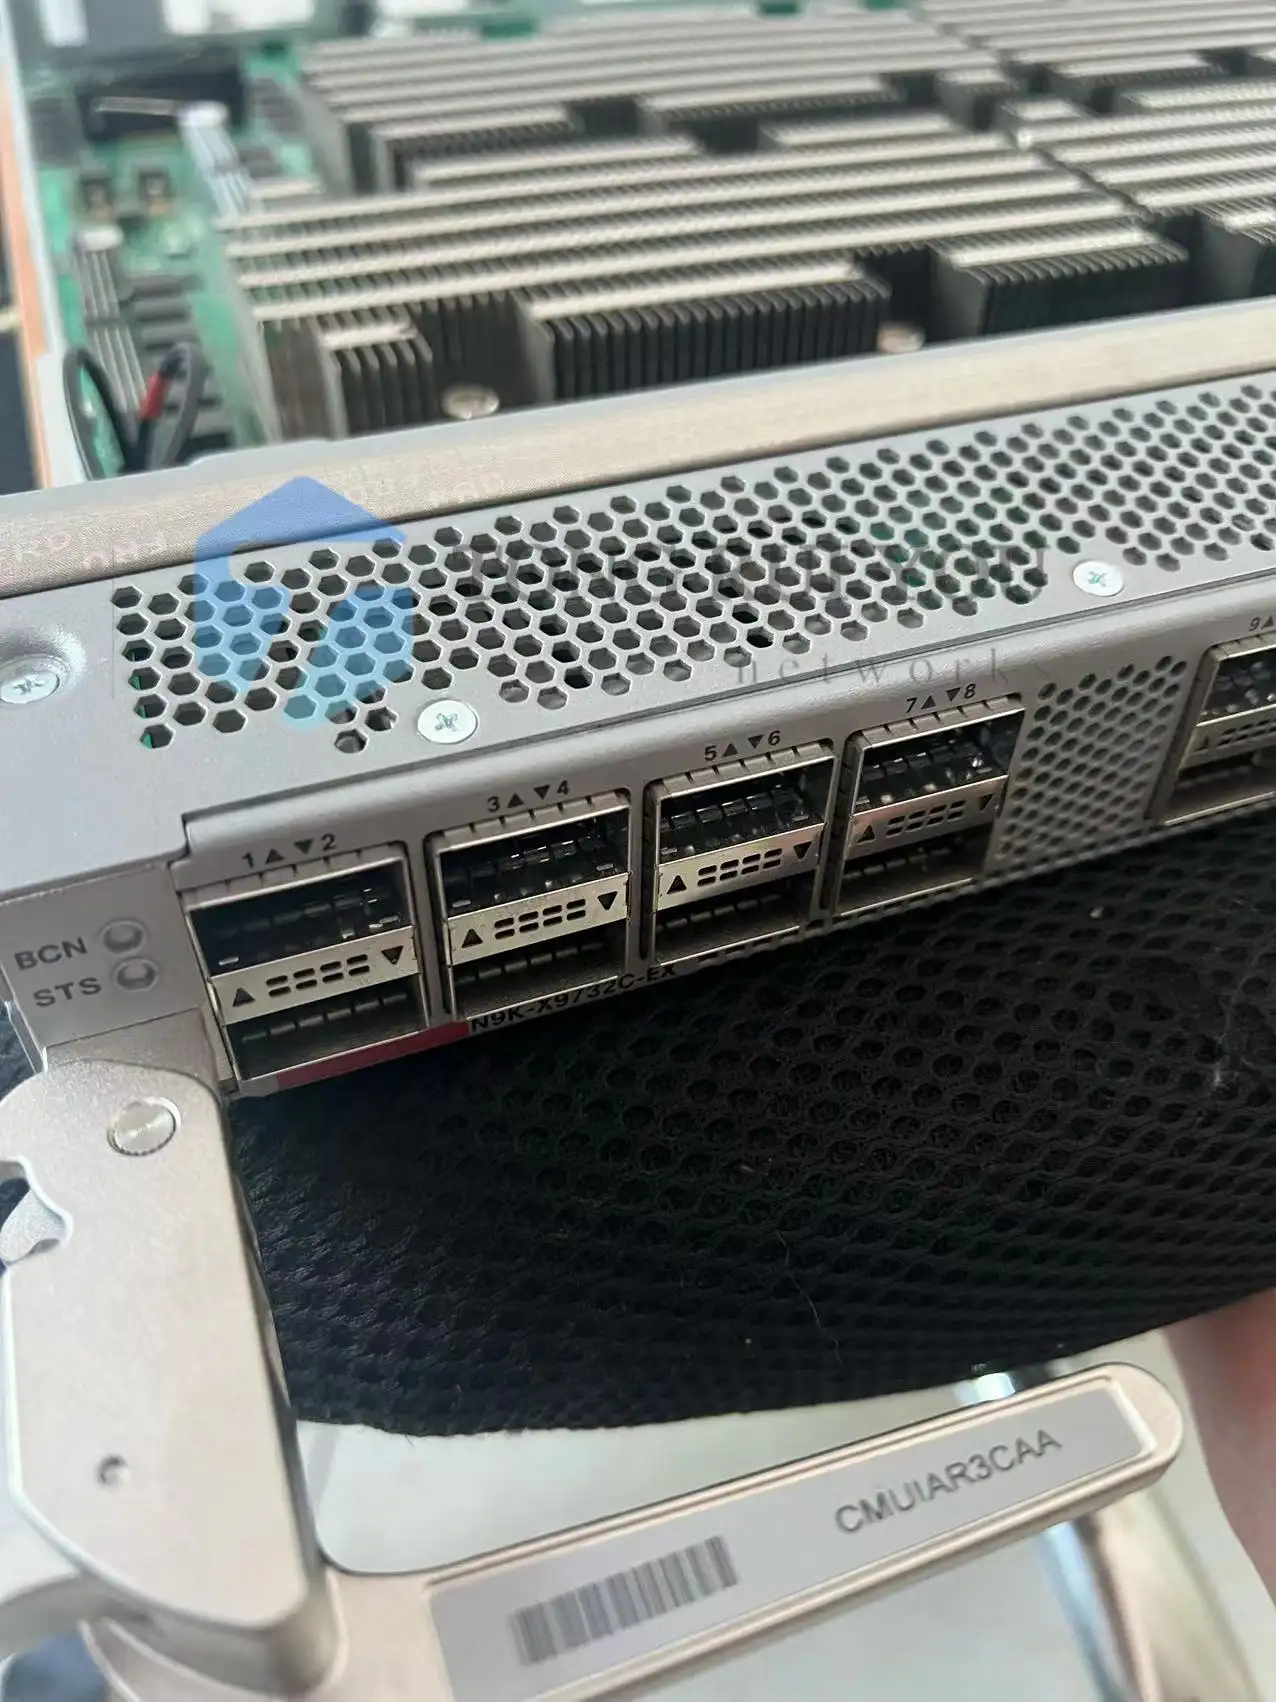 नेटवर्क मॉड्यूल सिस्को नेक्सस 9500 एजीजी एसीआई स्पाइनलाइनकार्ड, 32पी 100जी क्यूएसएफपी28 एन9के-एक्स9732सी-ईएक्स